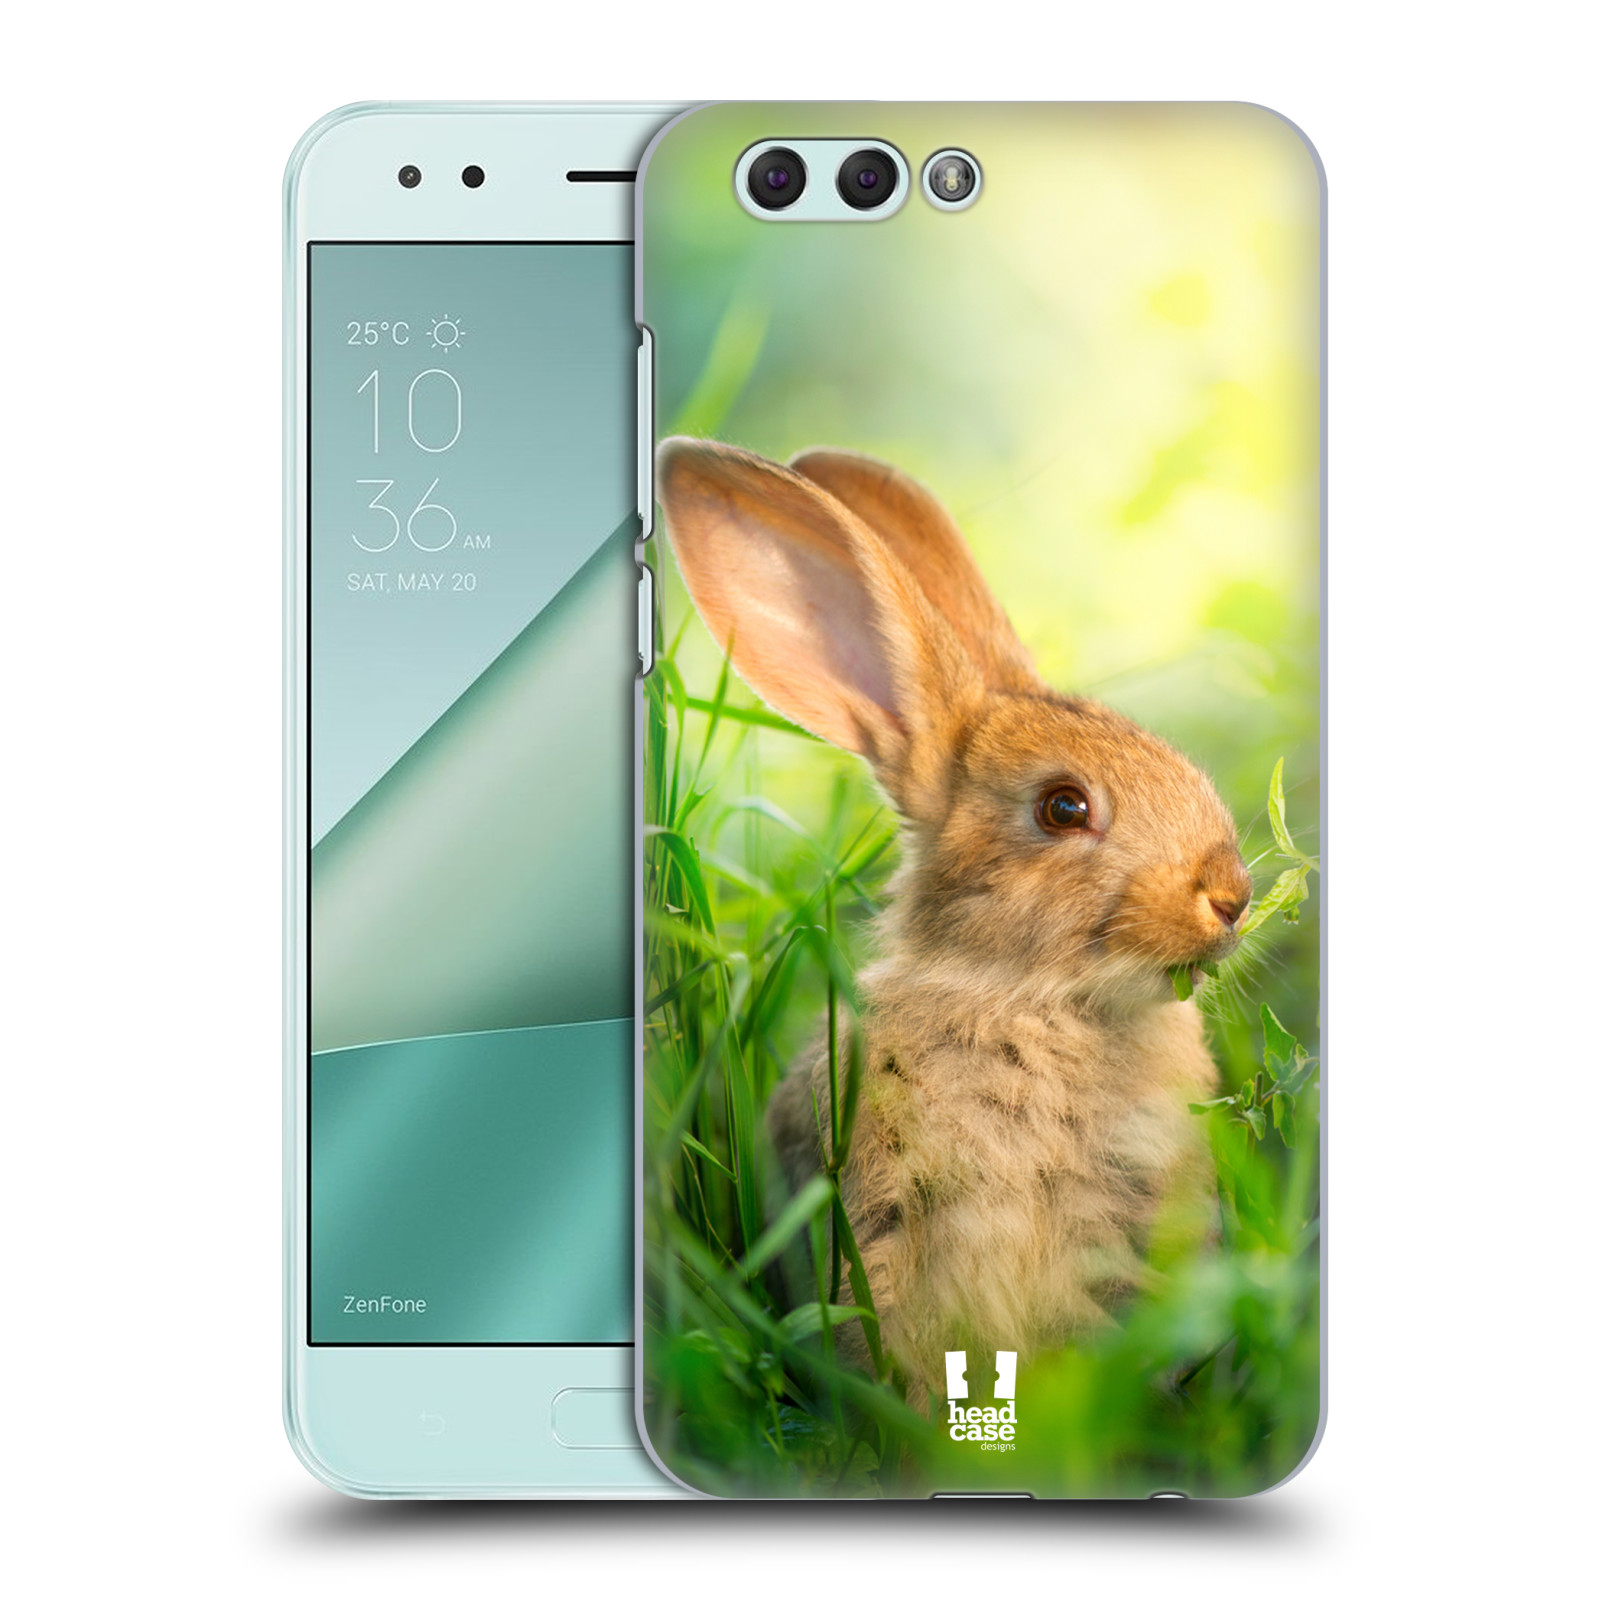 HEAD CASE plastový obal na mobil Asus Zenfone 4 ZE554KL vzor Divočina, Divoký život a zvířata foto ZAJÍČEK V TRÁVĚ ZELENÁ